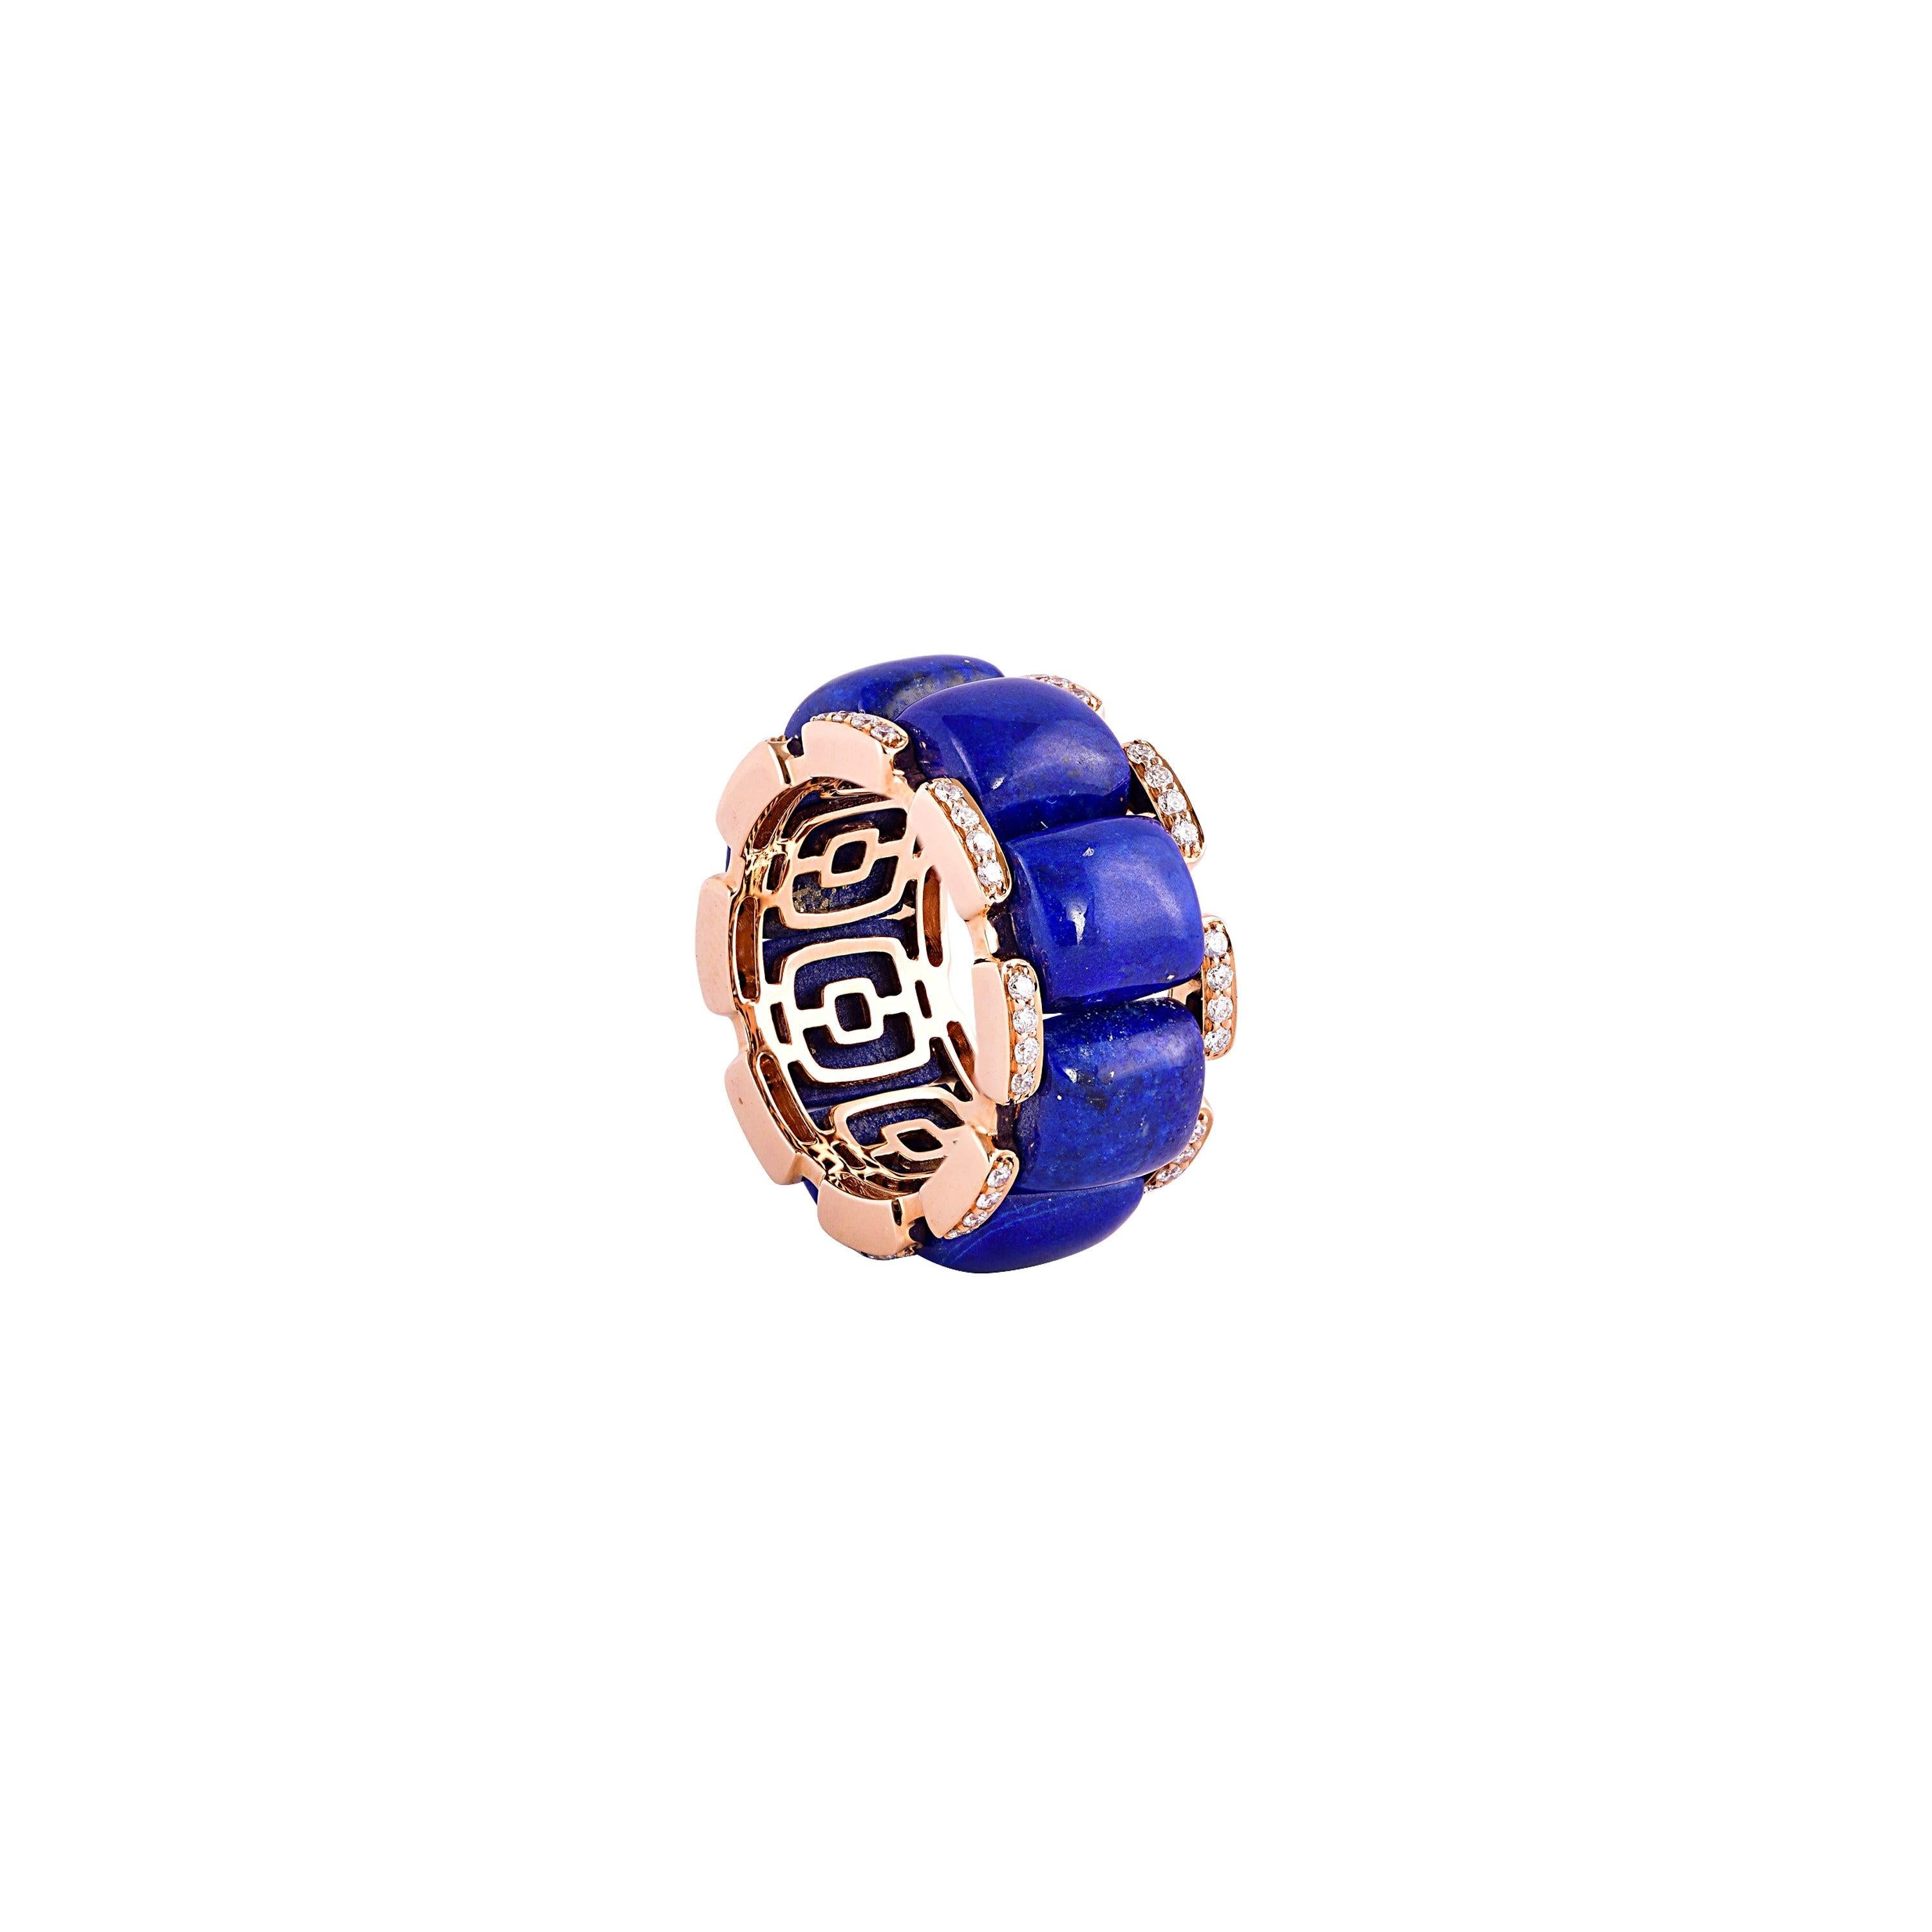 For Sale:  19.32 Carat Lapis Lazuli and White Diamond Ring in 18 Karat Rose Gold 3